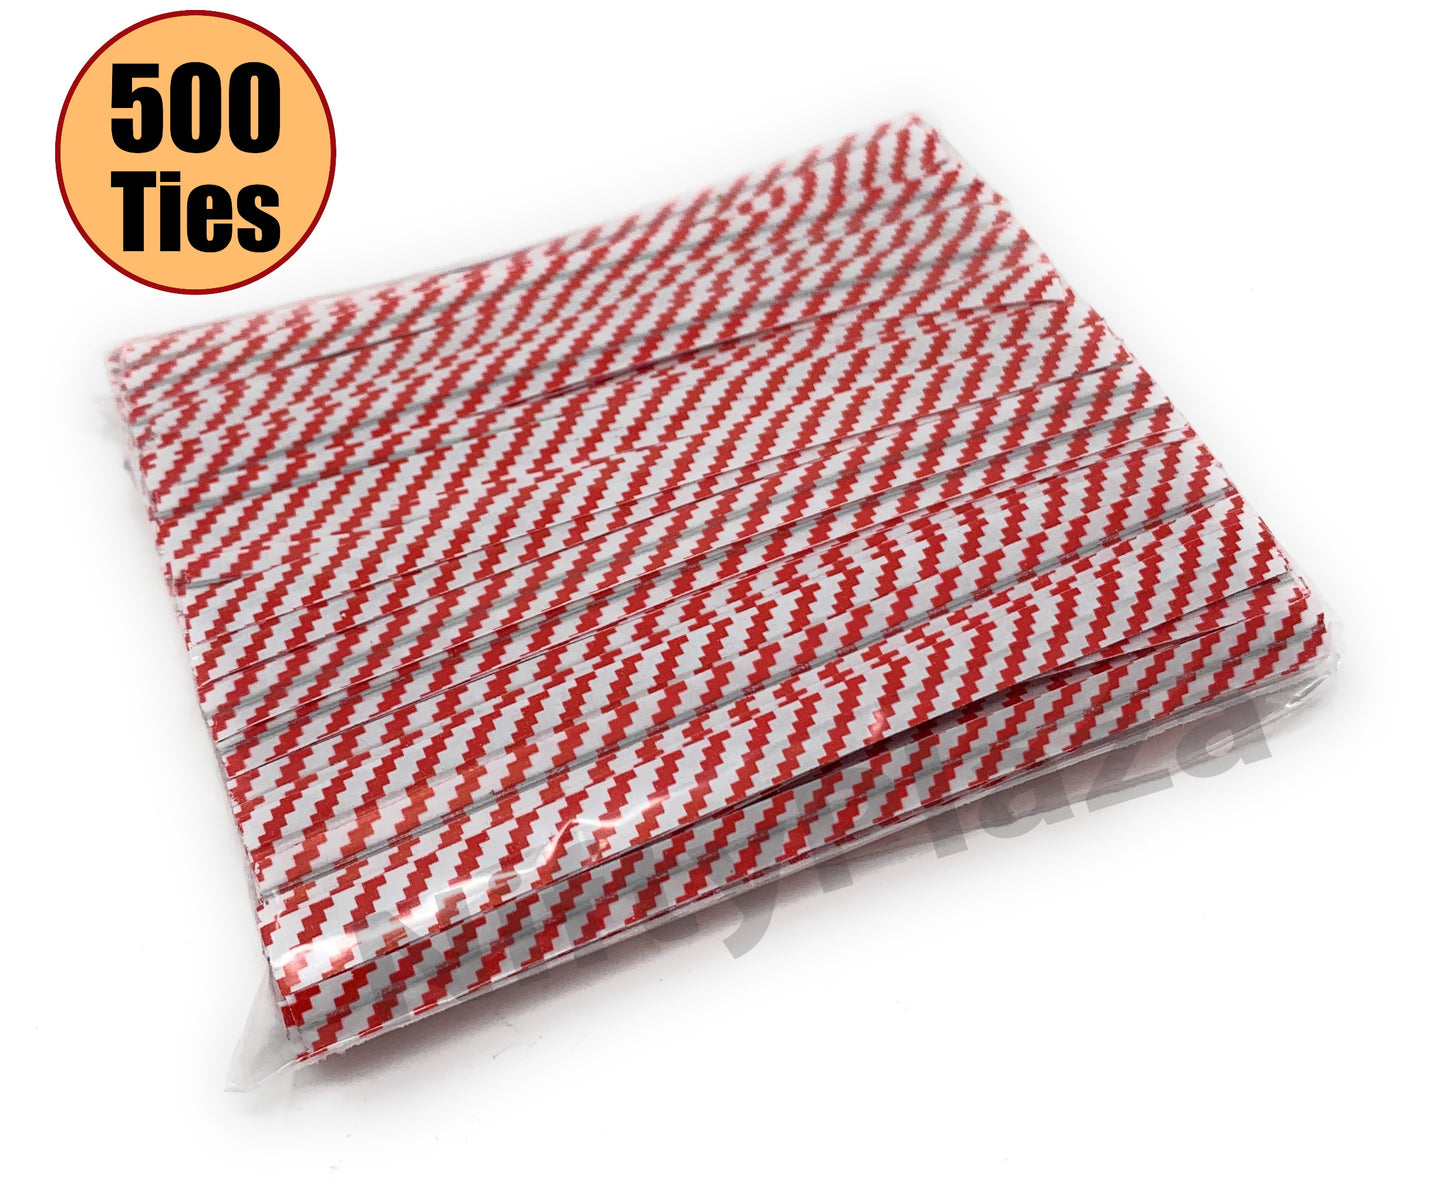 NiftyPlaza Twist Ties 4 inch, Plastic Coated, No Rip Paper Ties - 500 Twist Ties